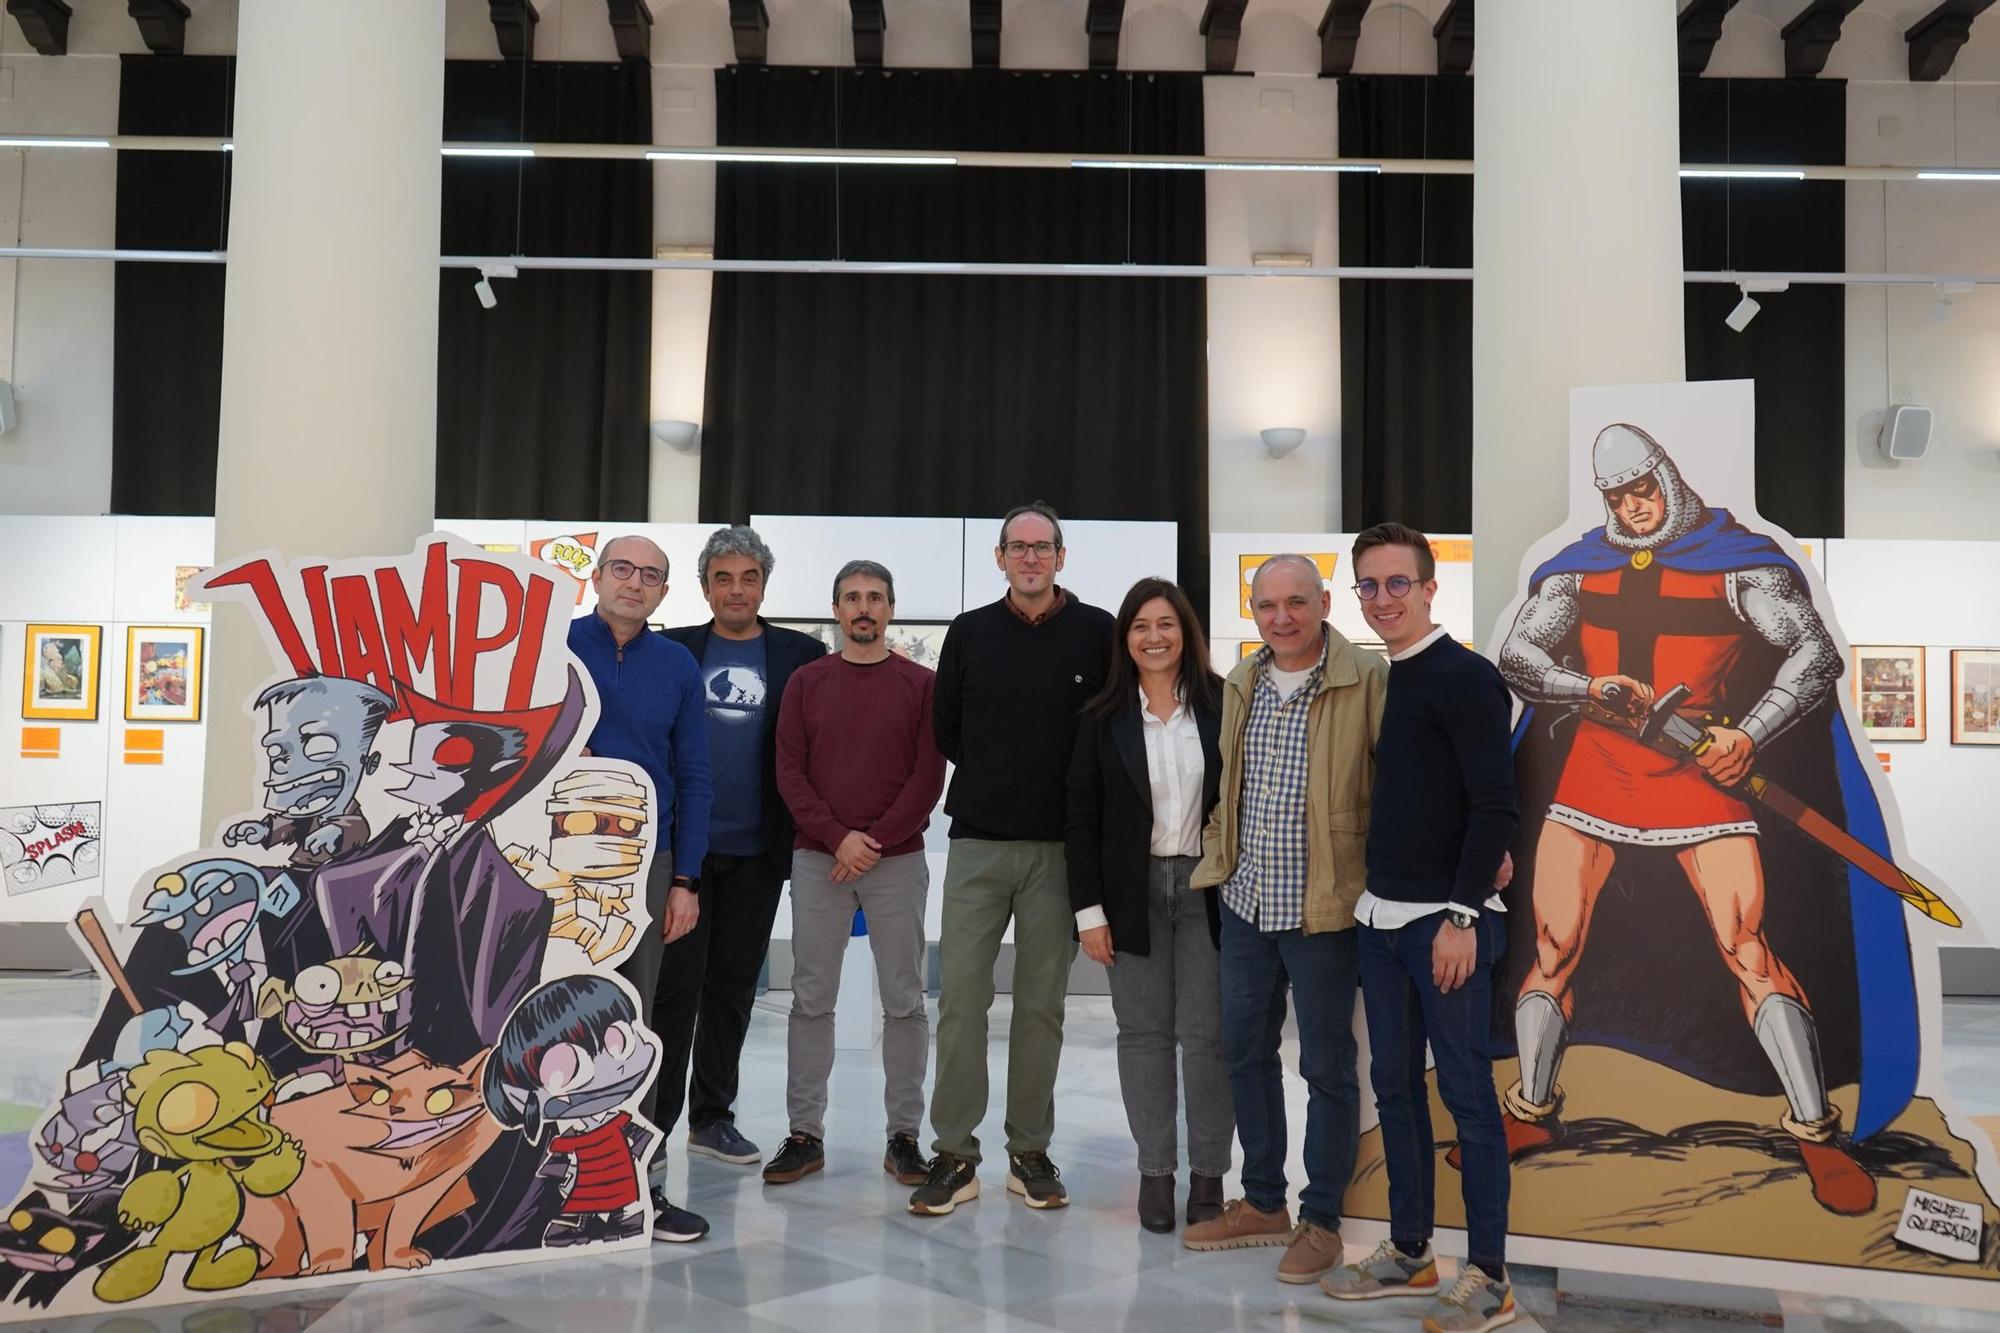 Así es la exposición sobre el cómic que se puede visitar en la Casa de la Cultura de Xàtiva